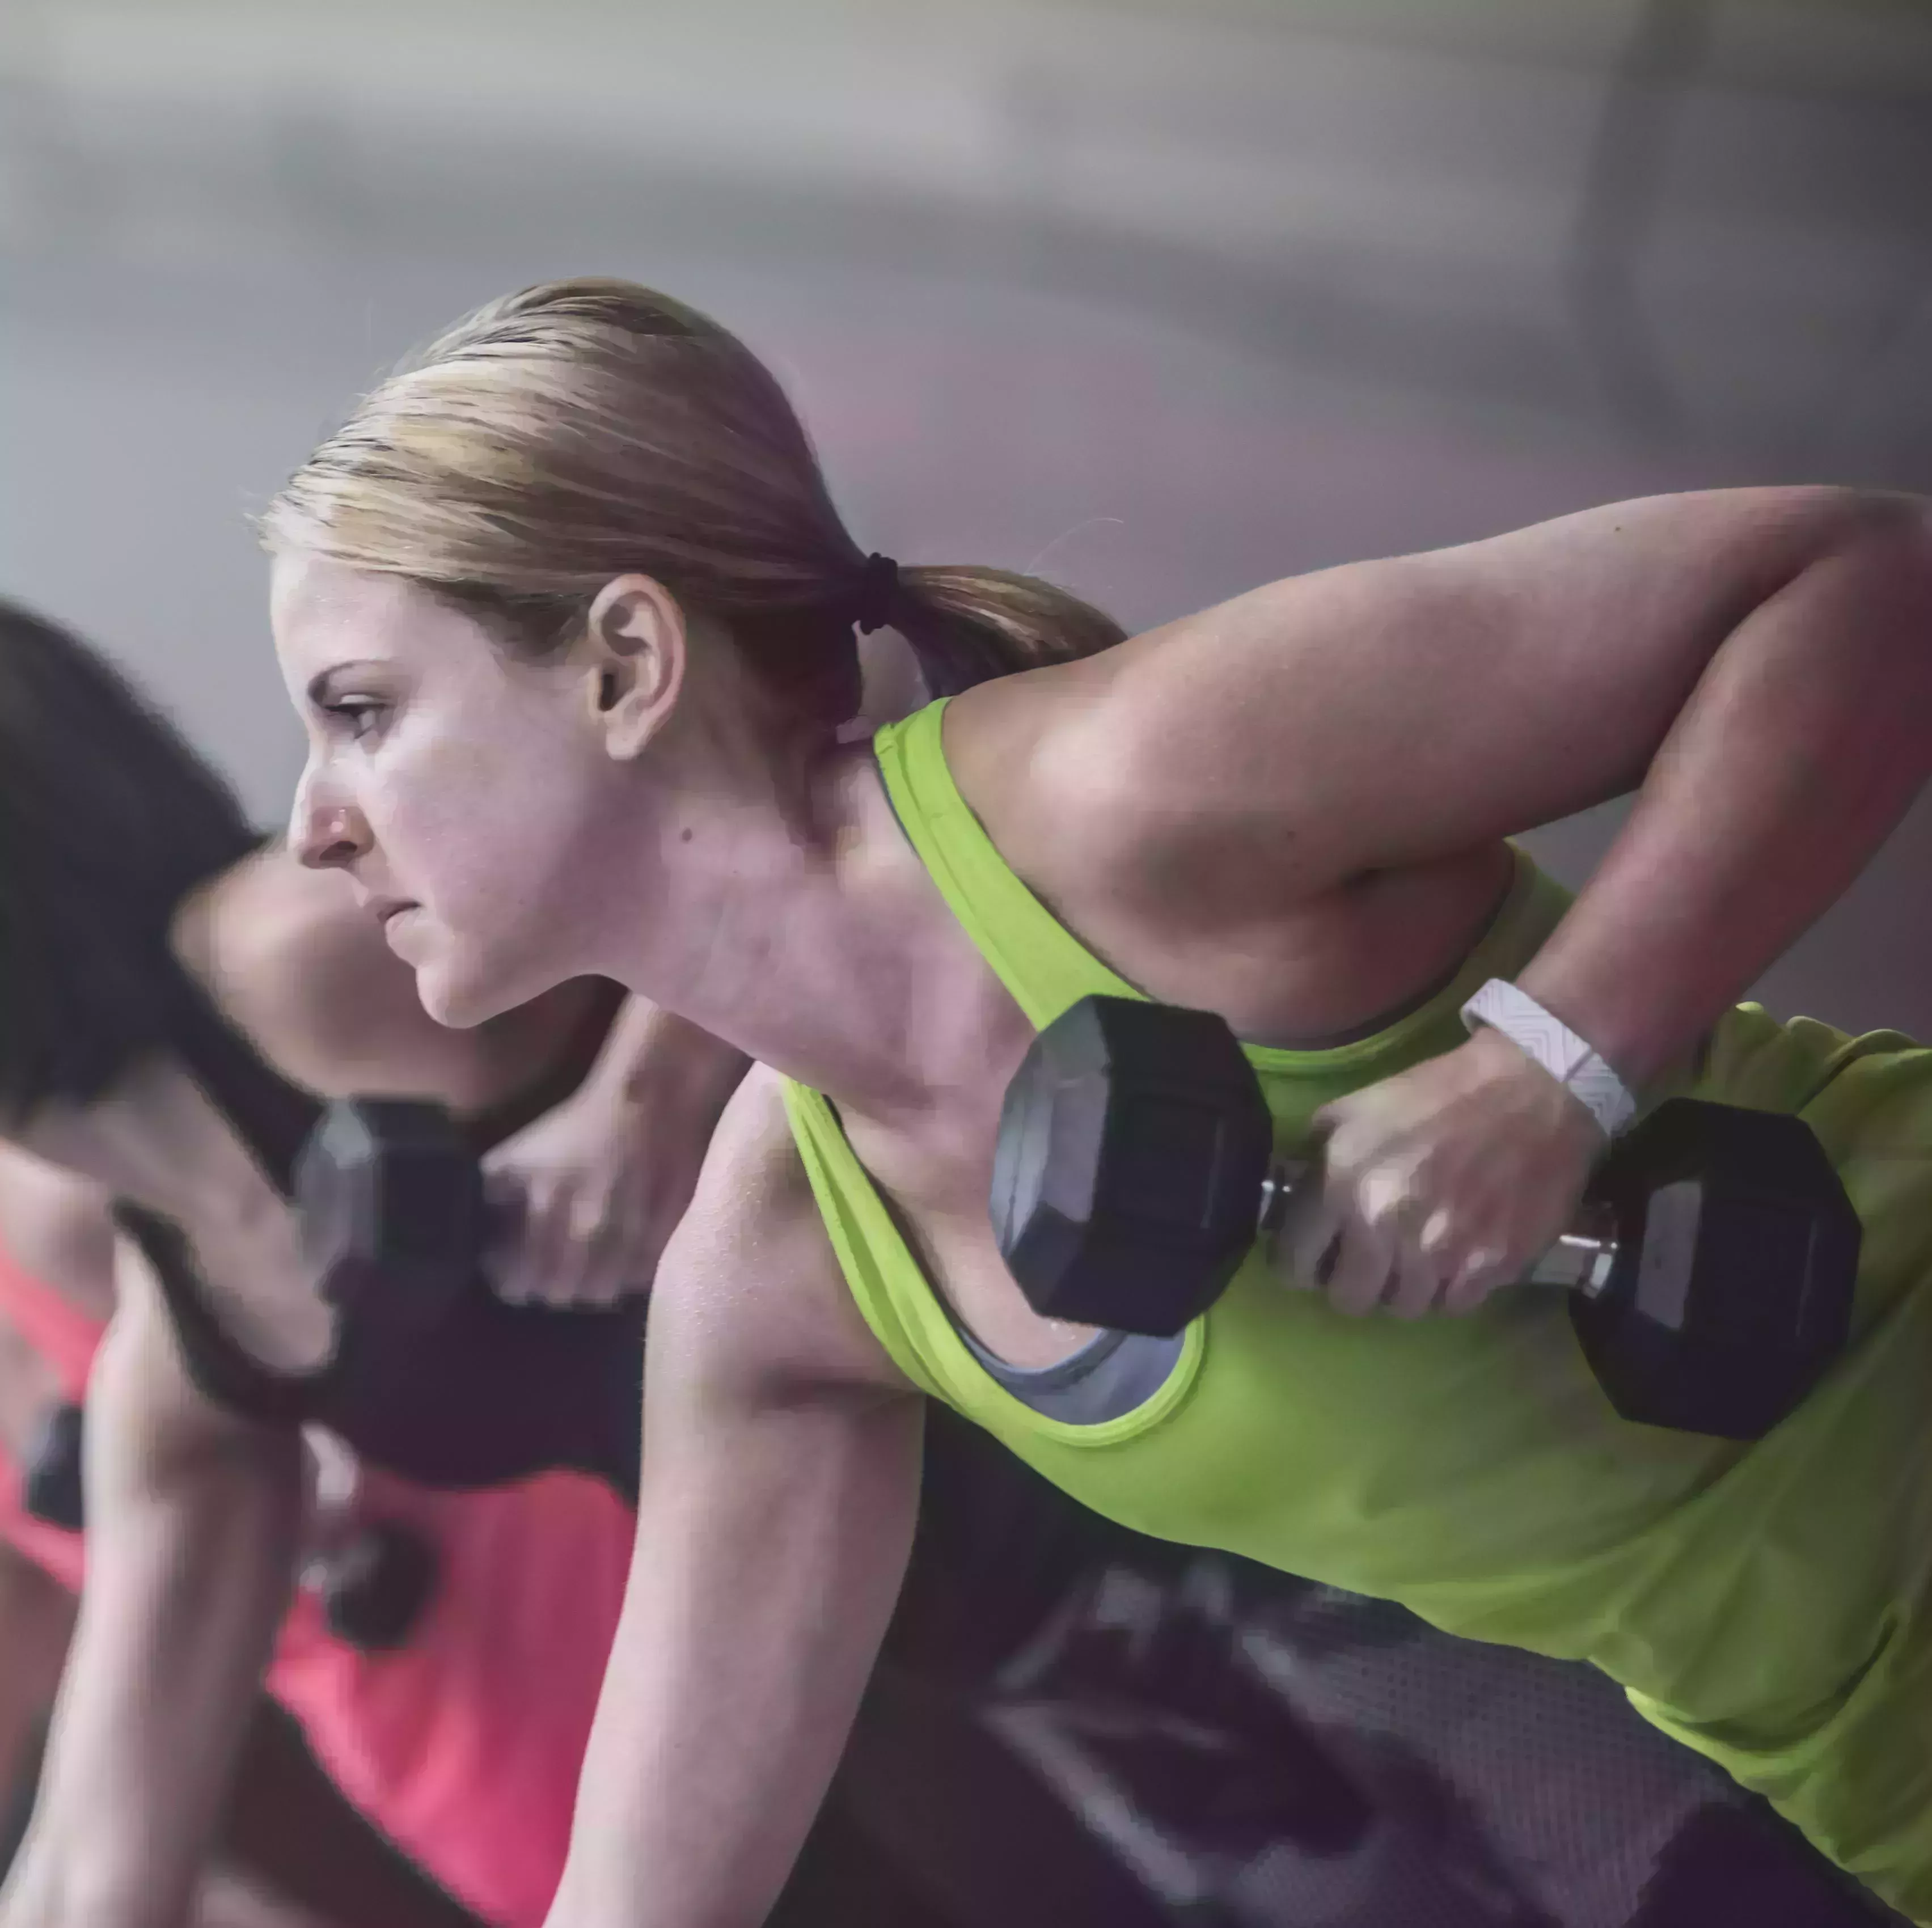 Los 20 mejores ejercicios de espalda para mujeres, según los mejores expertos en fitness